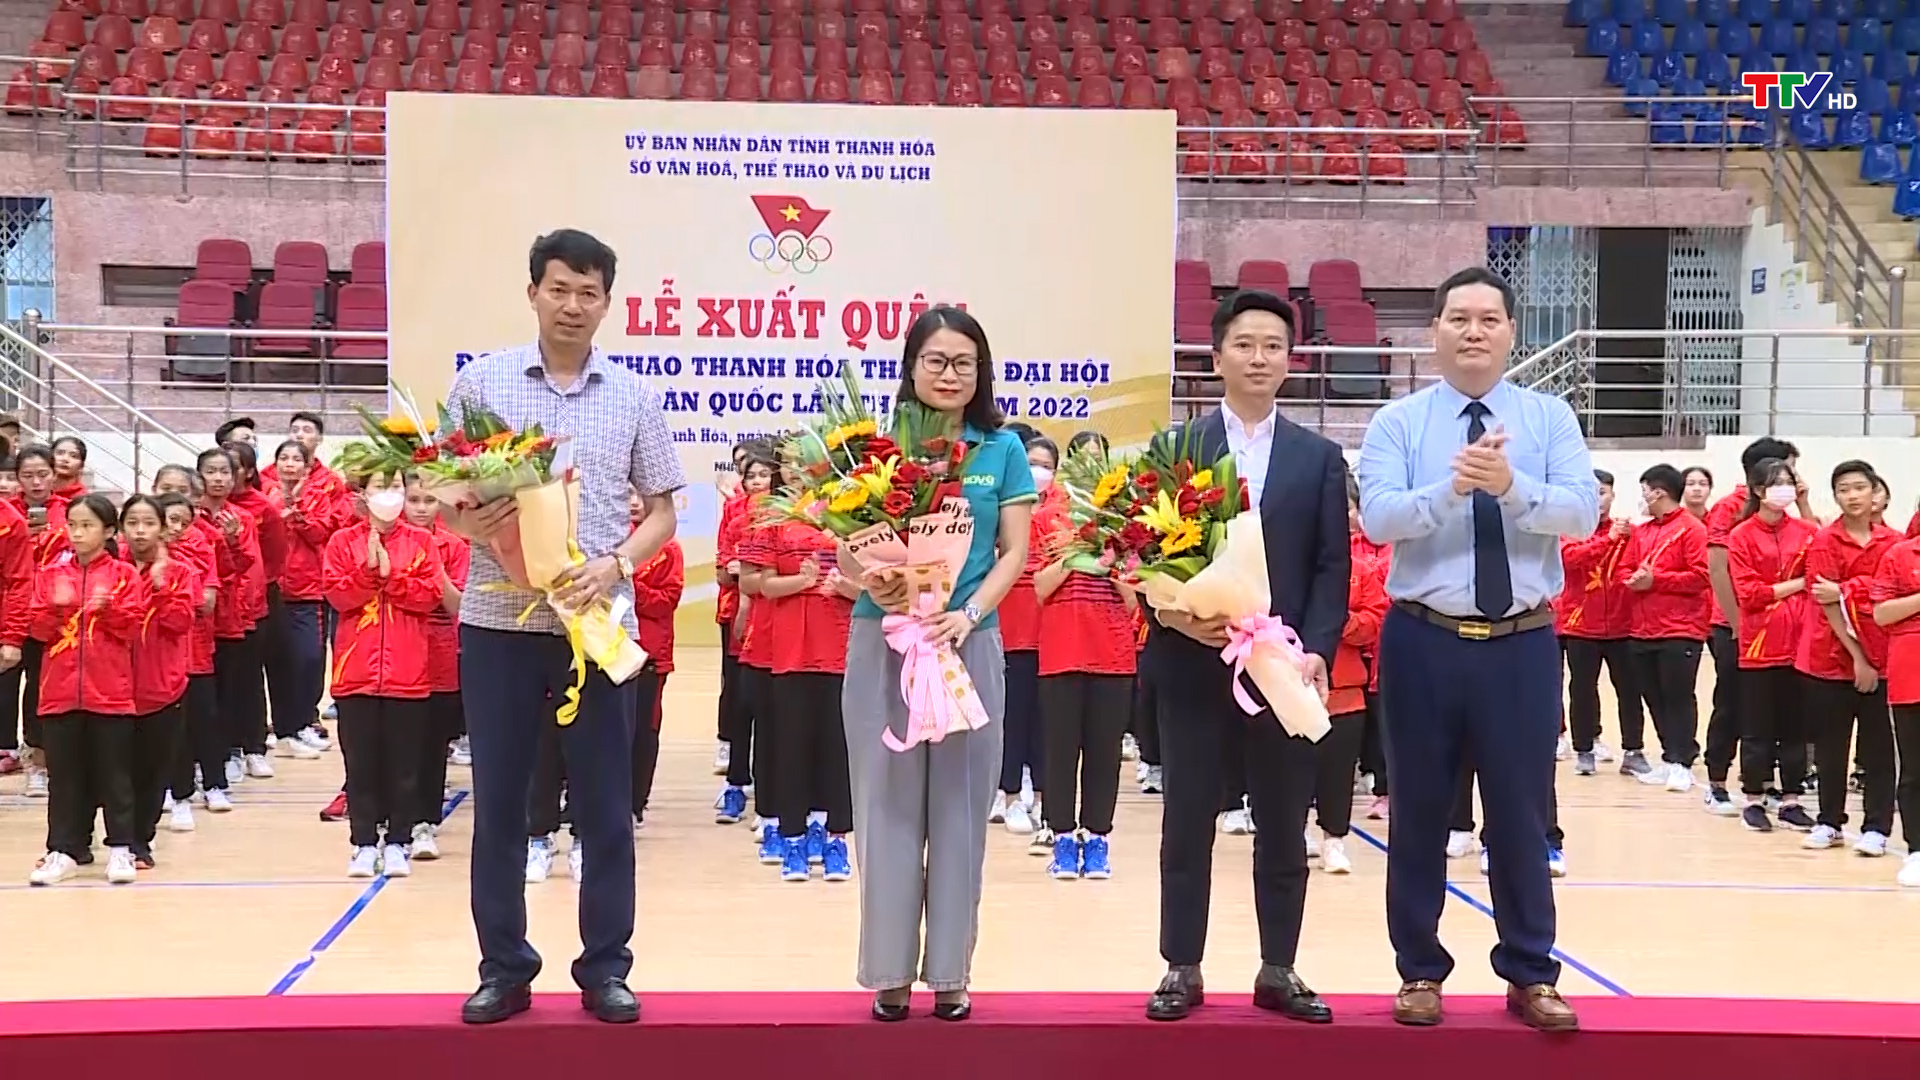 Đoàn Thể thao Thanh Hoá xuất quân tham gia Đại hội Thể thao toàn quốc lần thứ IX, năm 2022 - Ảnh 4.